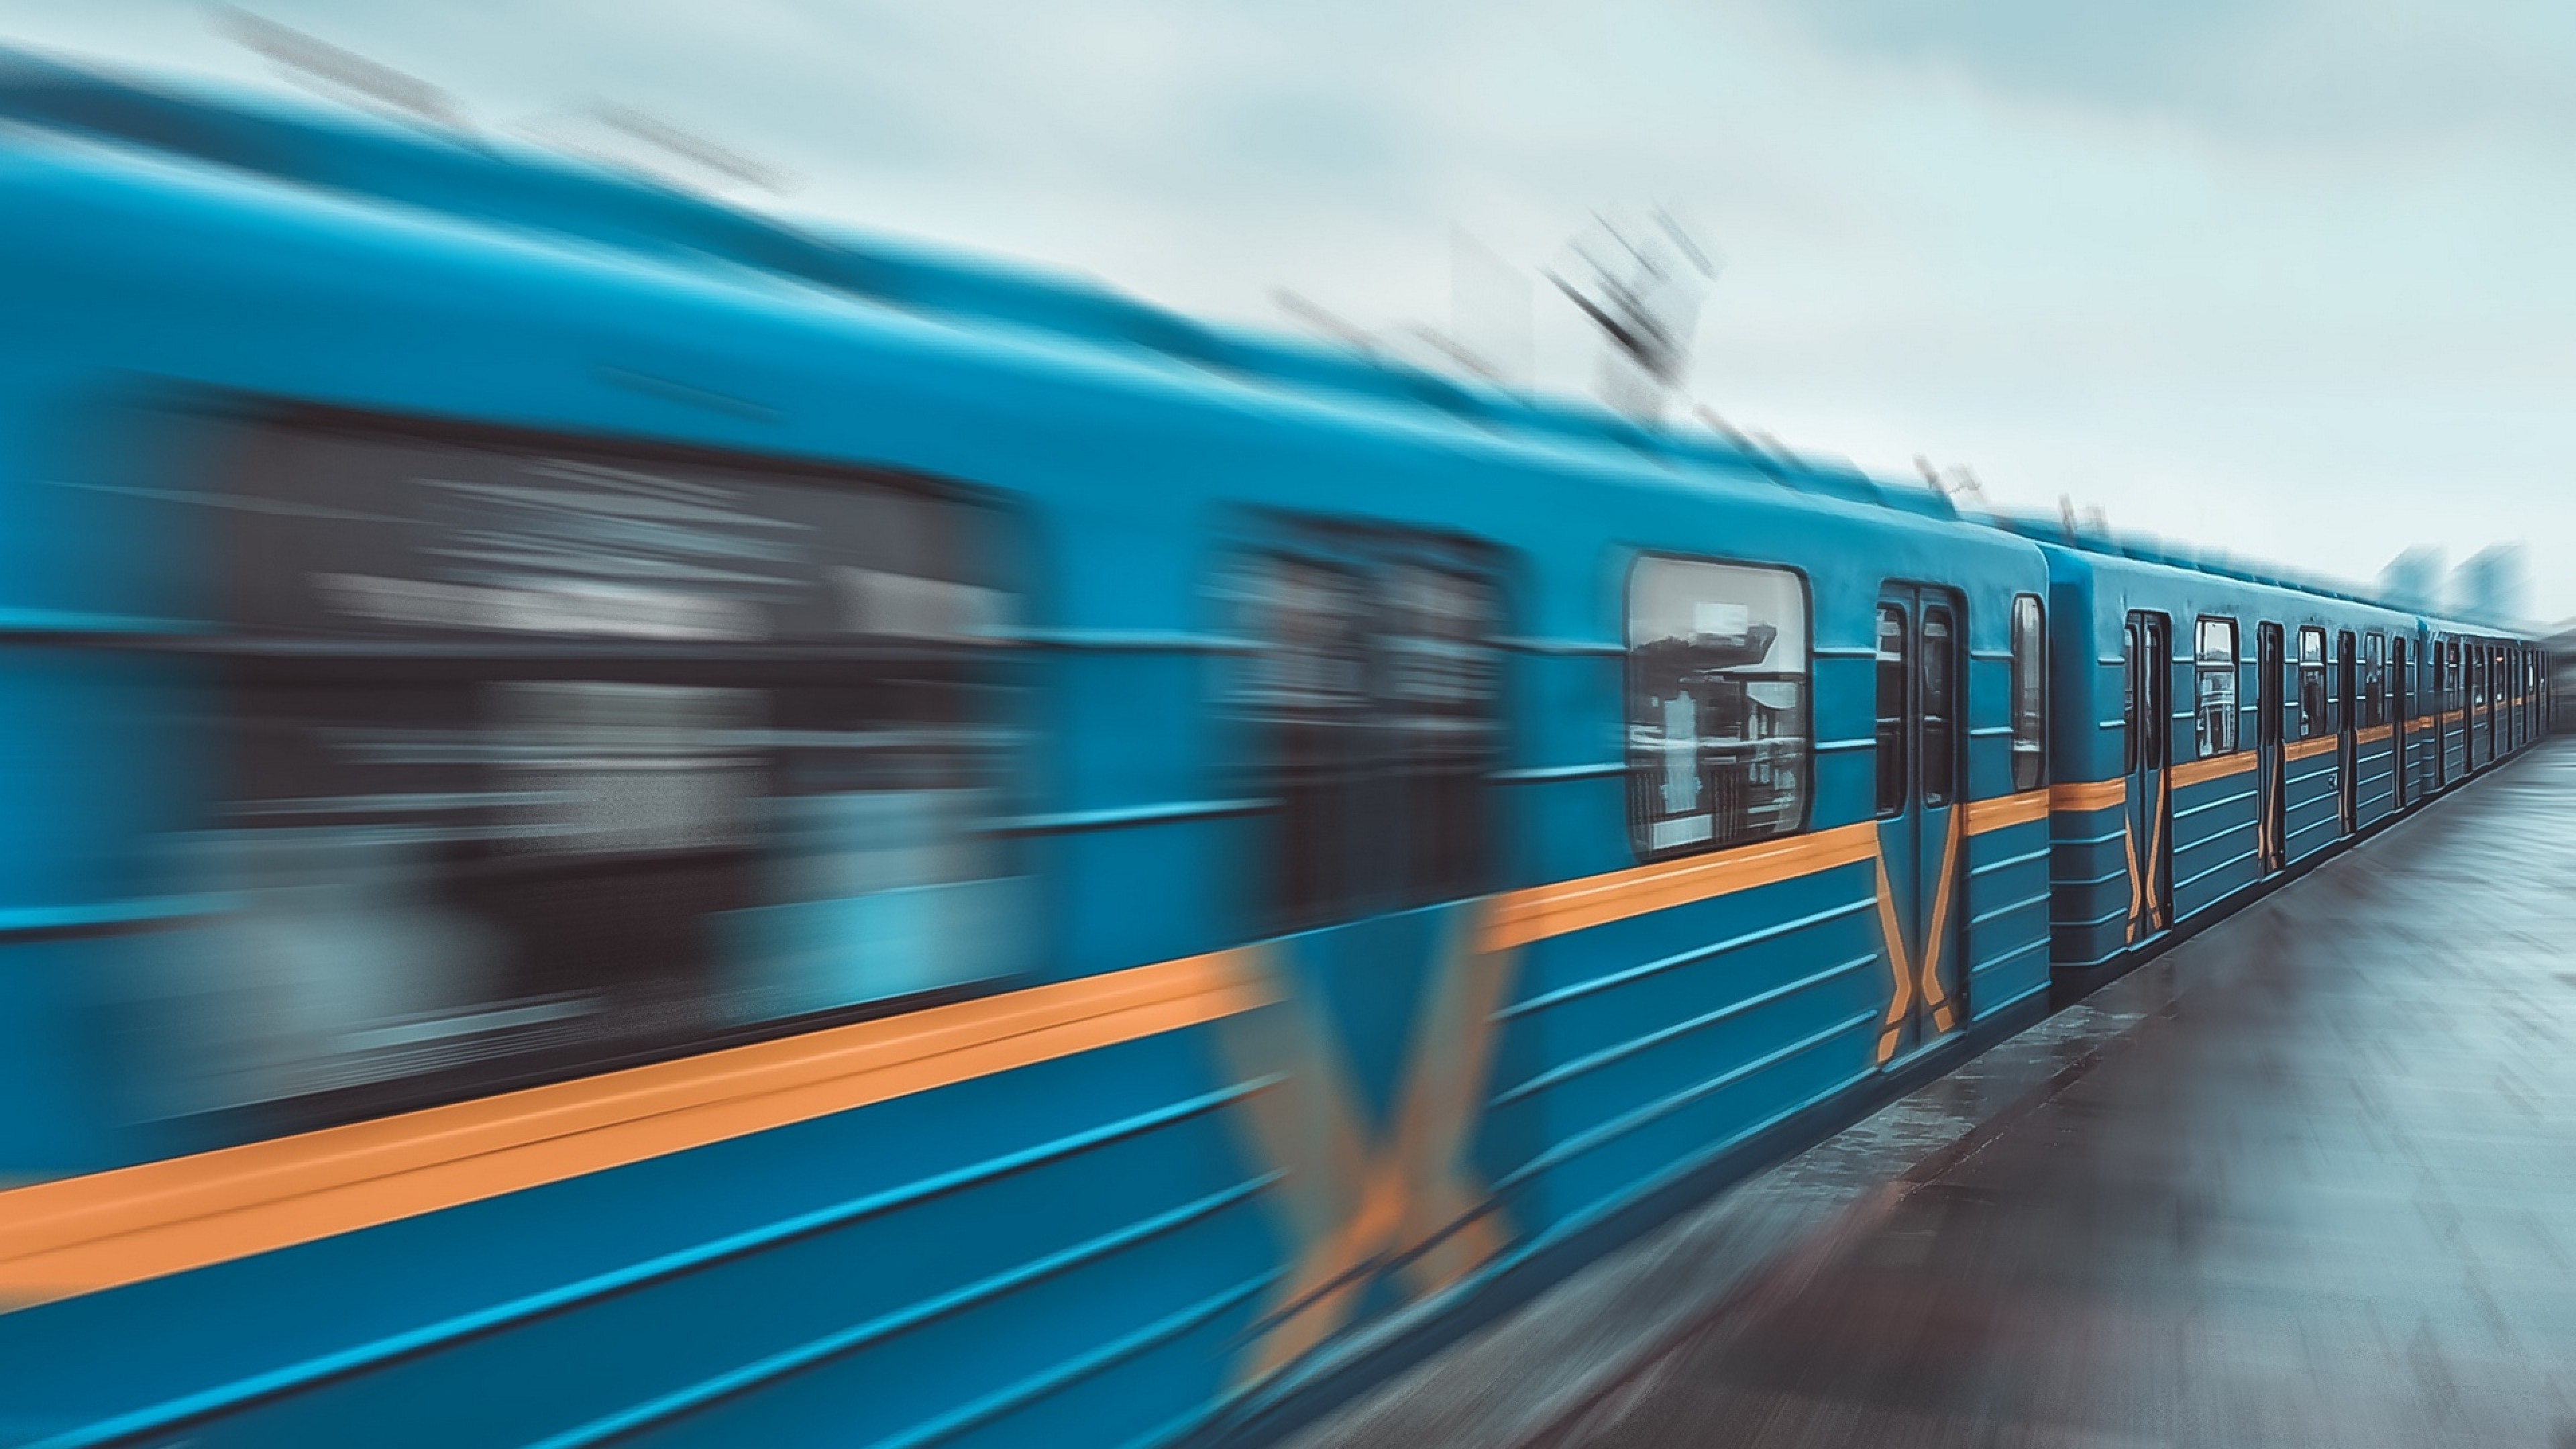 Скорость движения поезда в метро. Поезд в движении. Поезд метро. Вагон метро. Синий поезд.